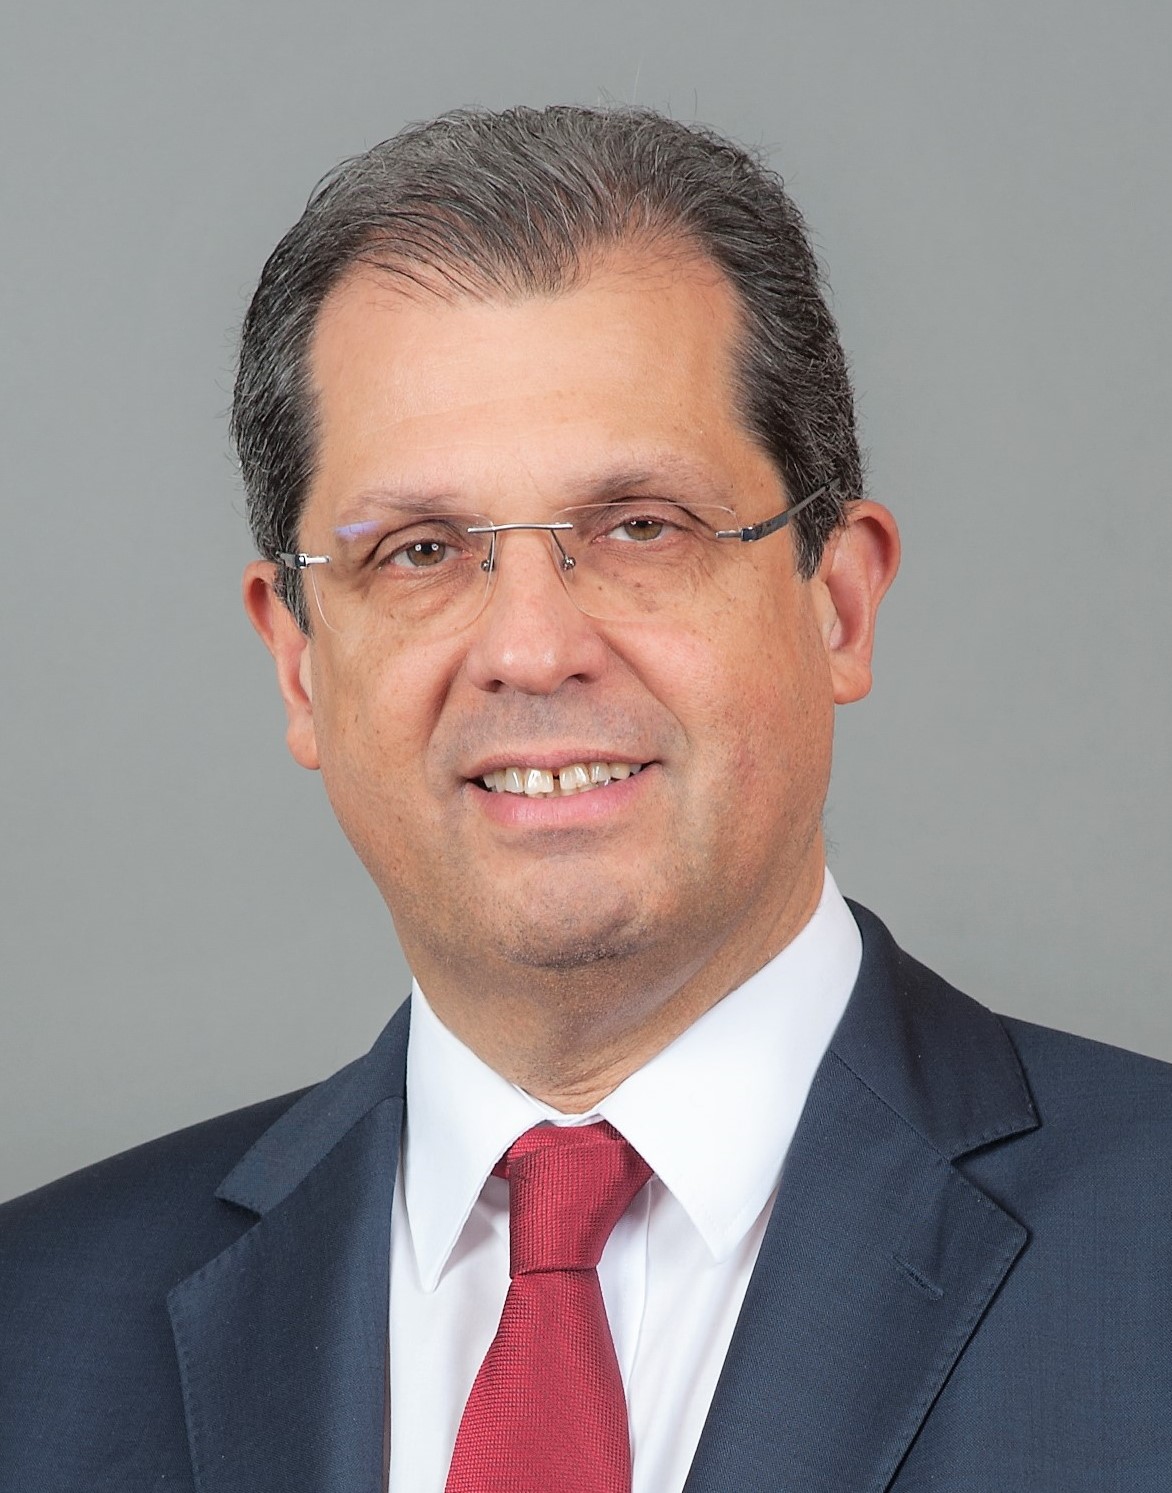 Mr. João Cadete de Matos